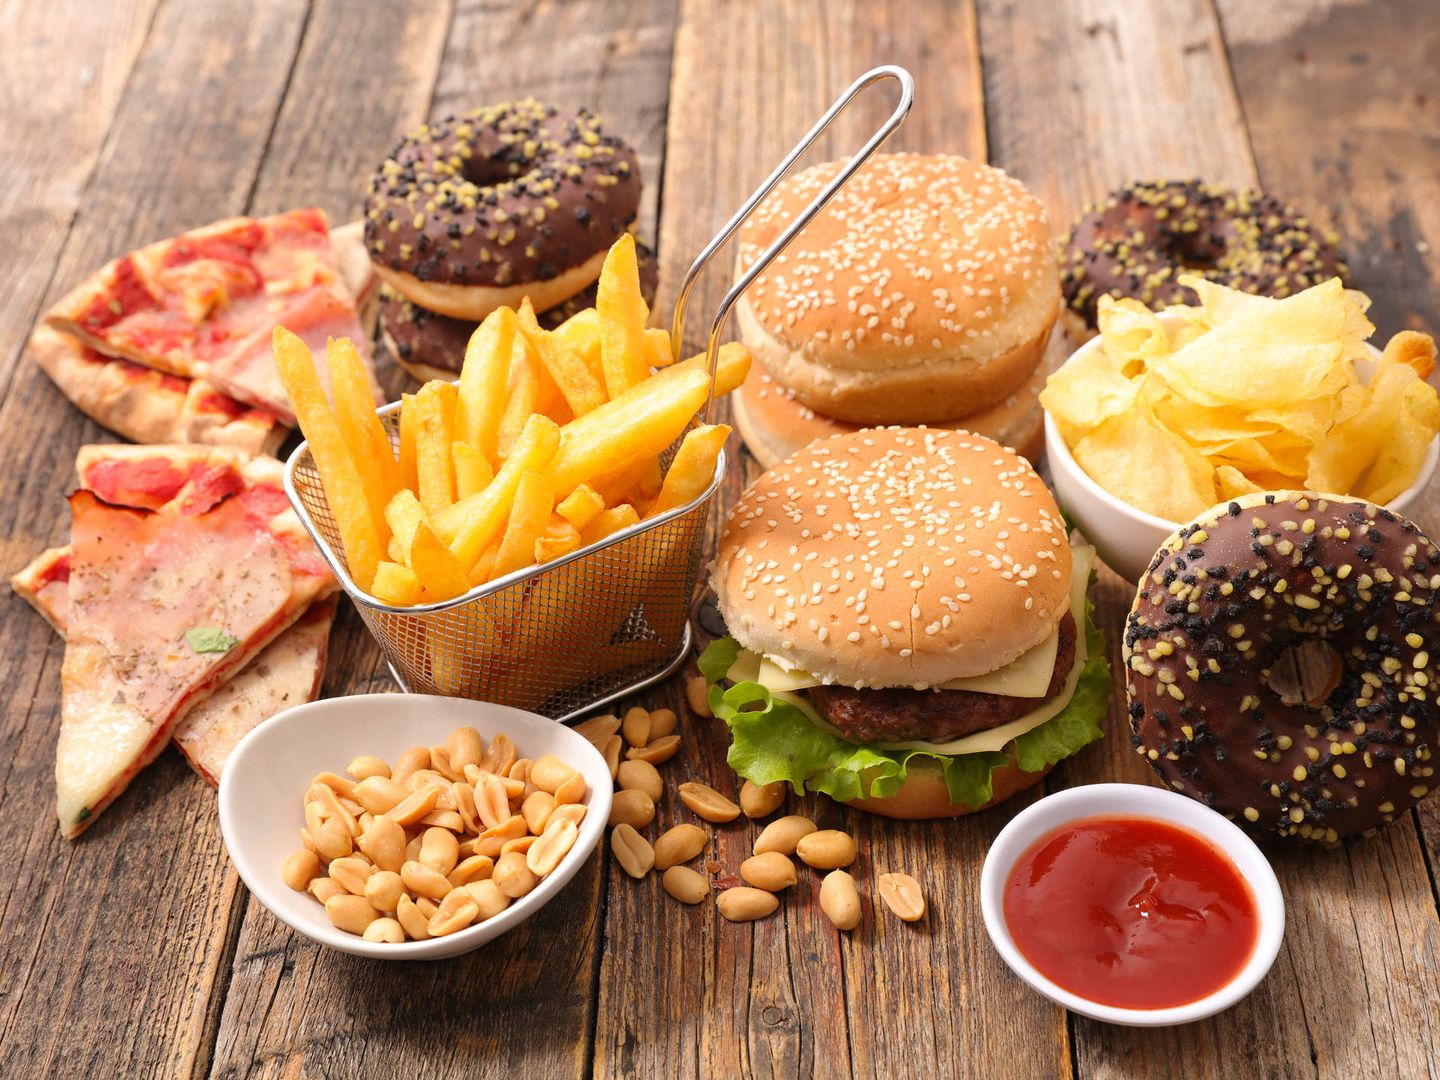 La comida basura contiene muchas calorías y debemos intentar evitarla (Foto: iStock)